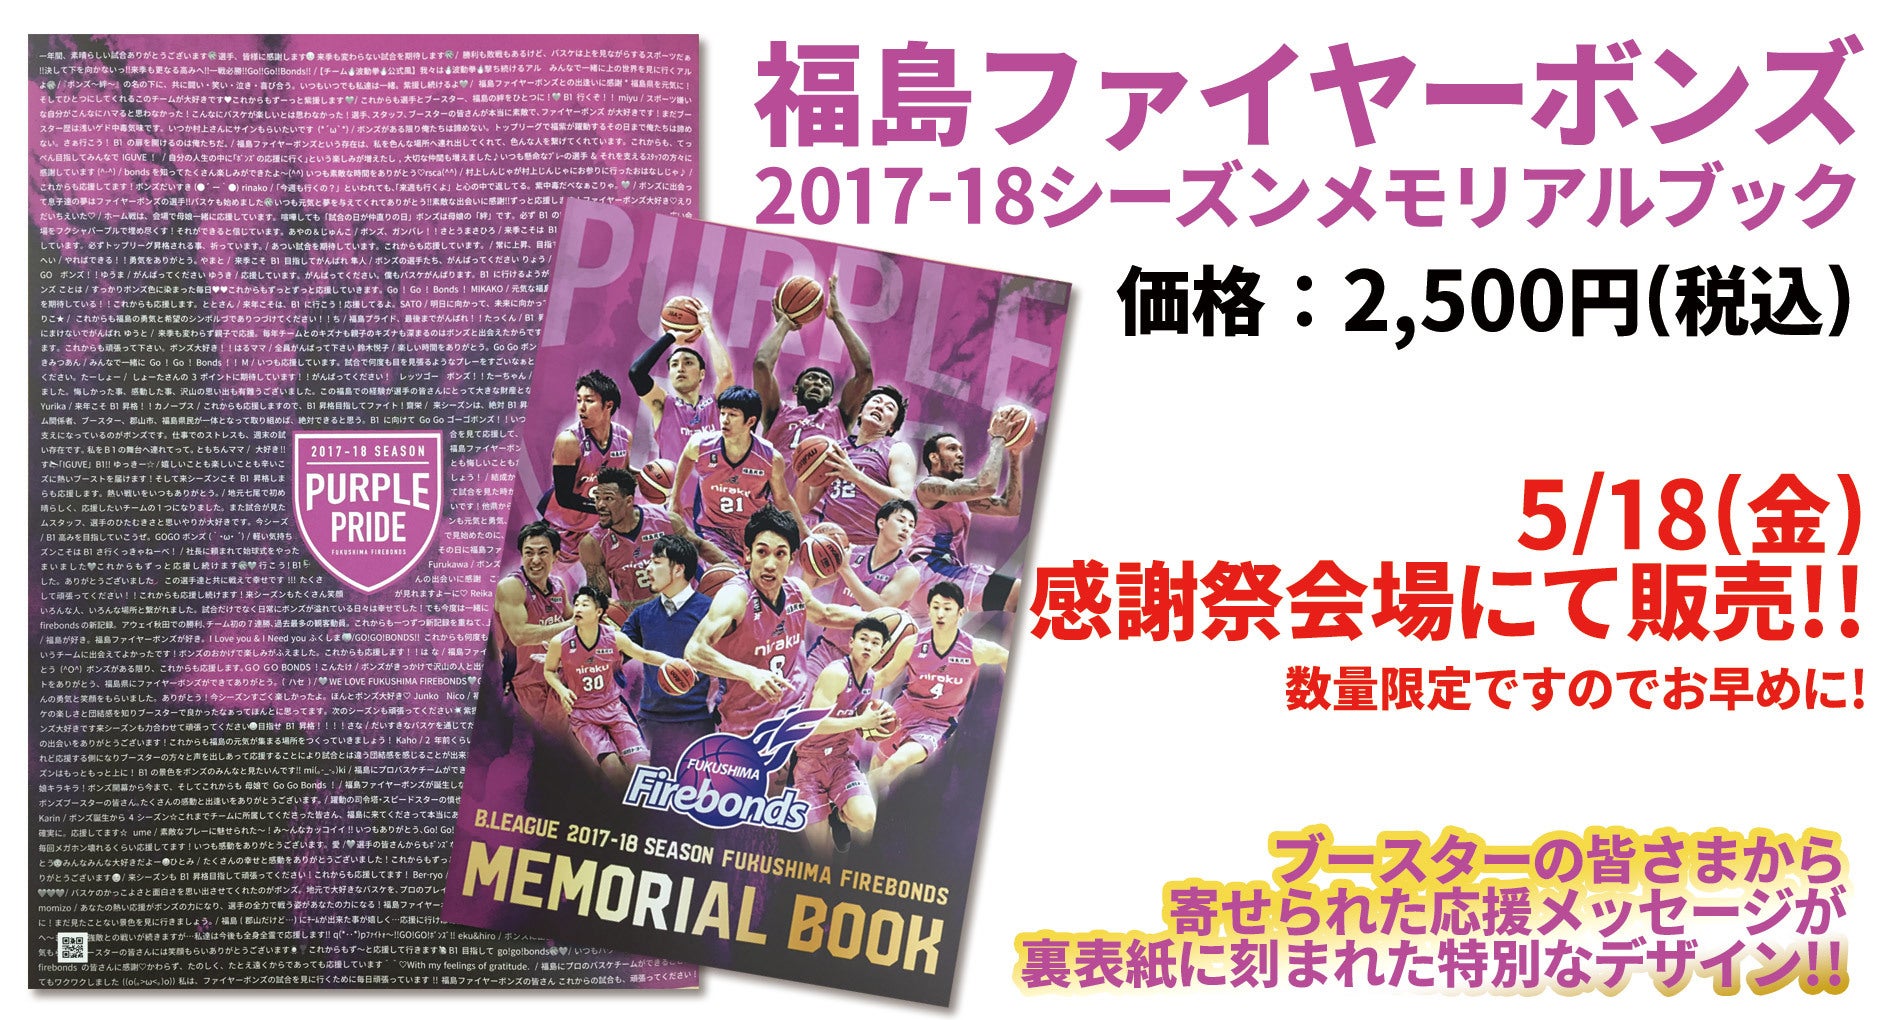 2017-18-memorialbook-pr.jpg